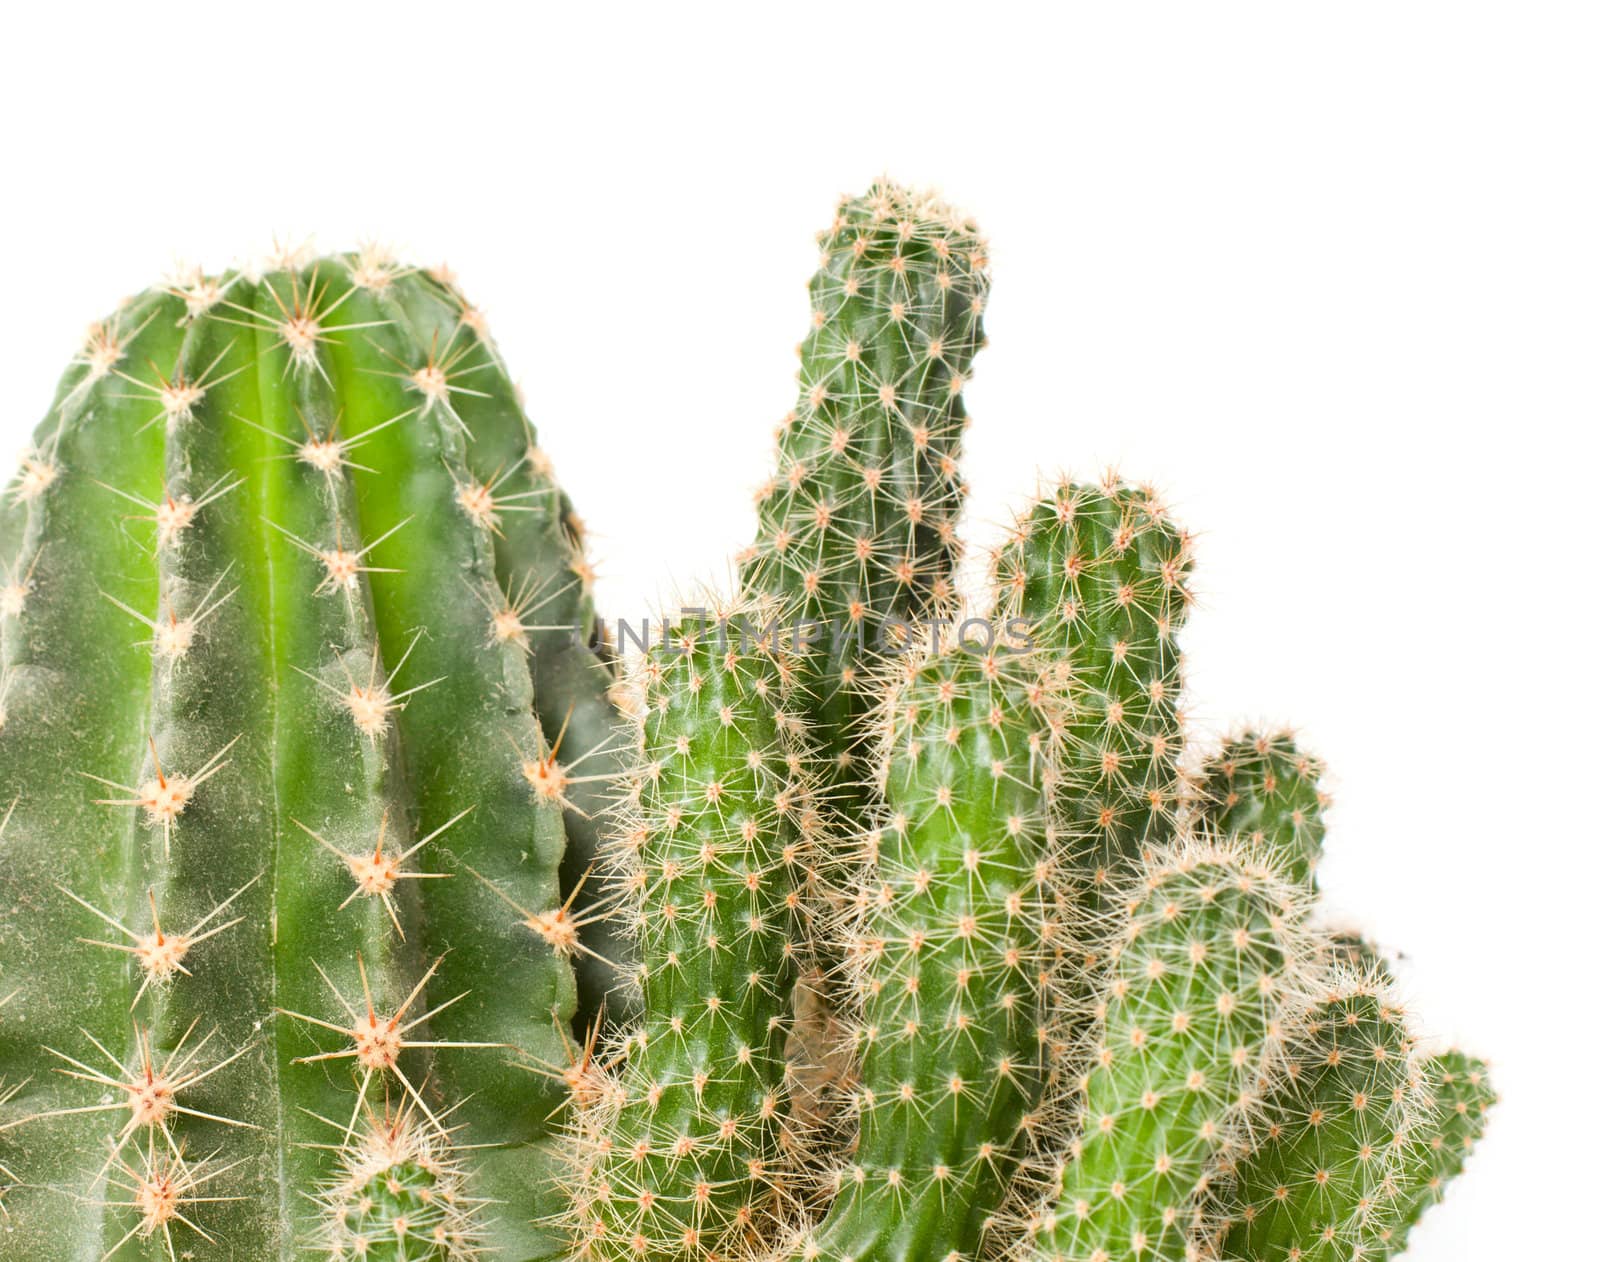 Cactus isolated on white background by Bedolaga